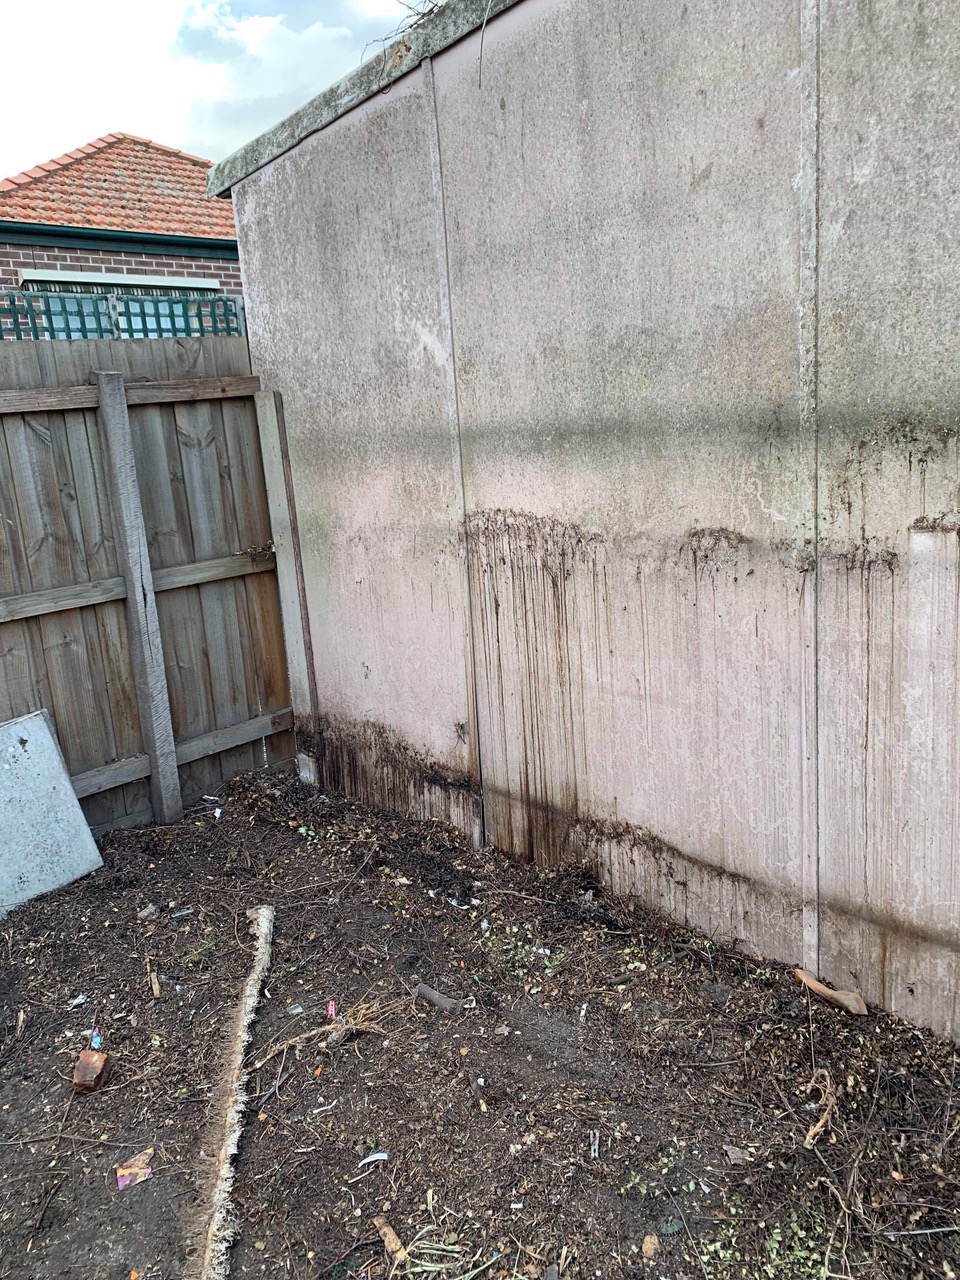 Garden Asbestos Disposal | Asbestos Disposal & Removal Services Melbourne